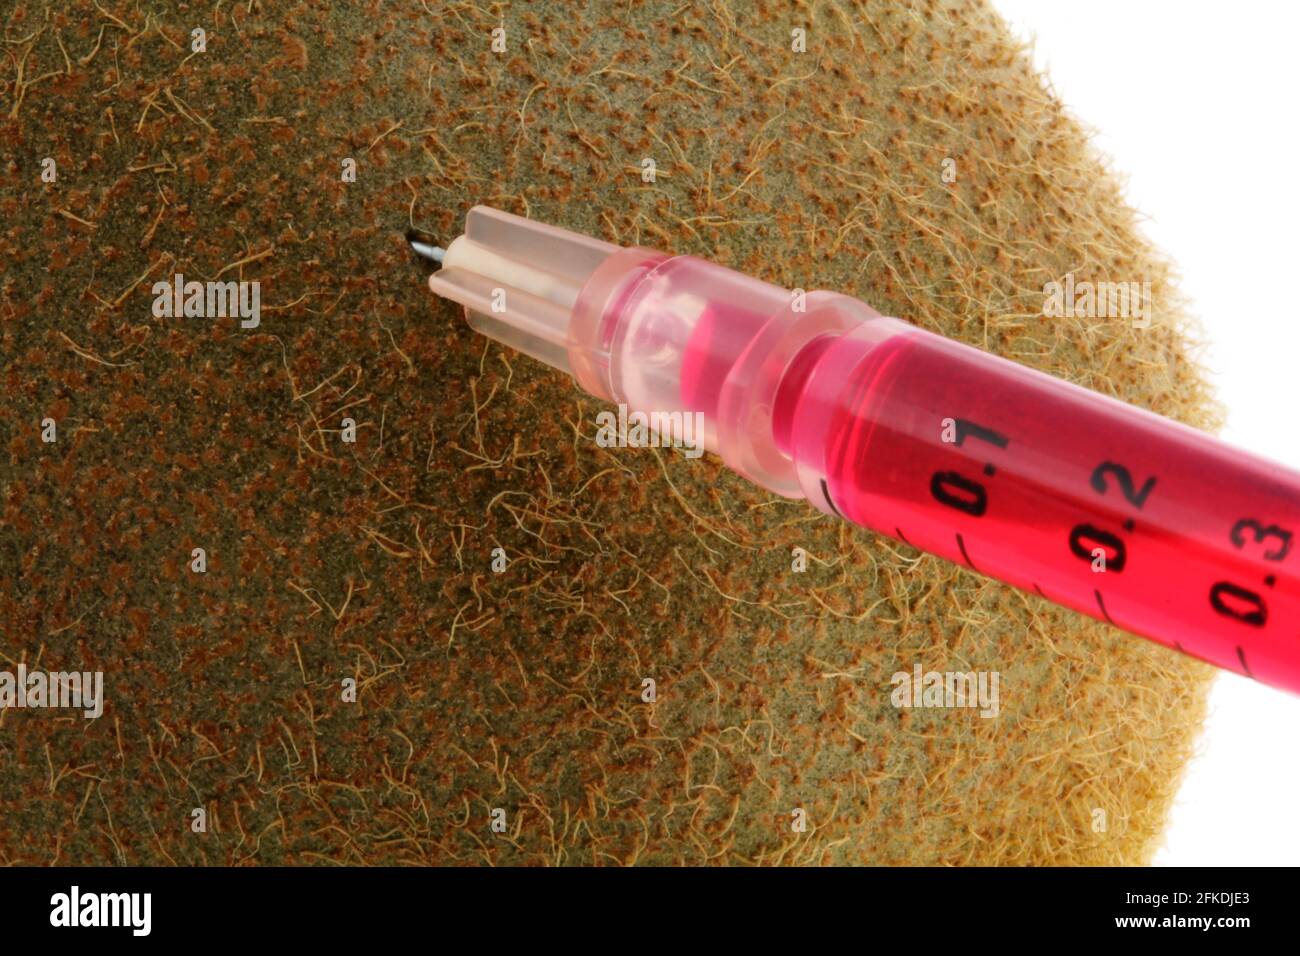 Foto conceptual de la modificación genética - Líquido rojo inyectándose en un kiwi Foto de stock